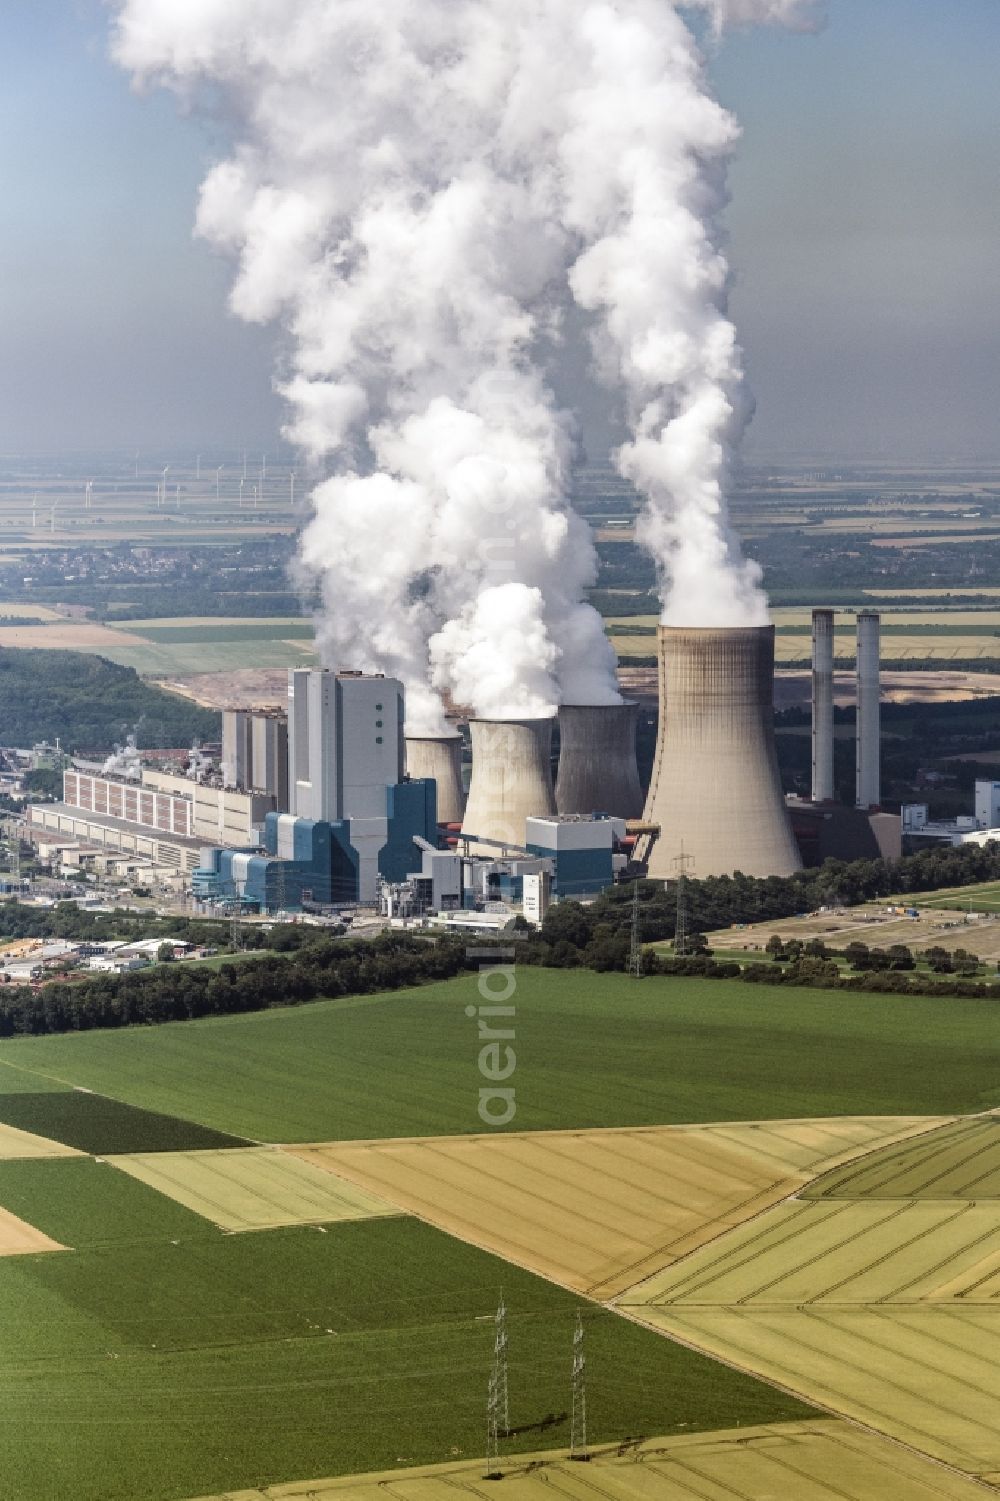 Aerial image Bergheim - Coal power plants of the RWE Power AG Kraftwerk Niederaussem in the district Niederaussem in Bergheim in the state North Rhine-Westphalia, Germany